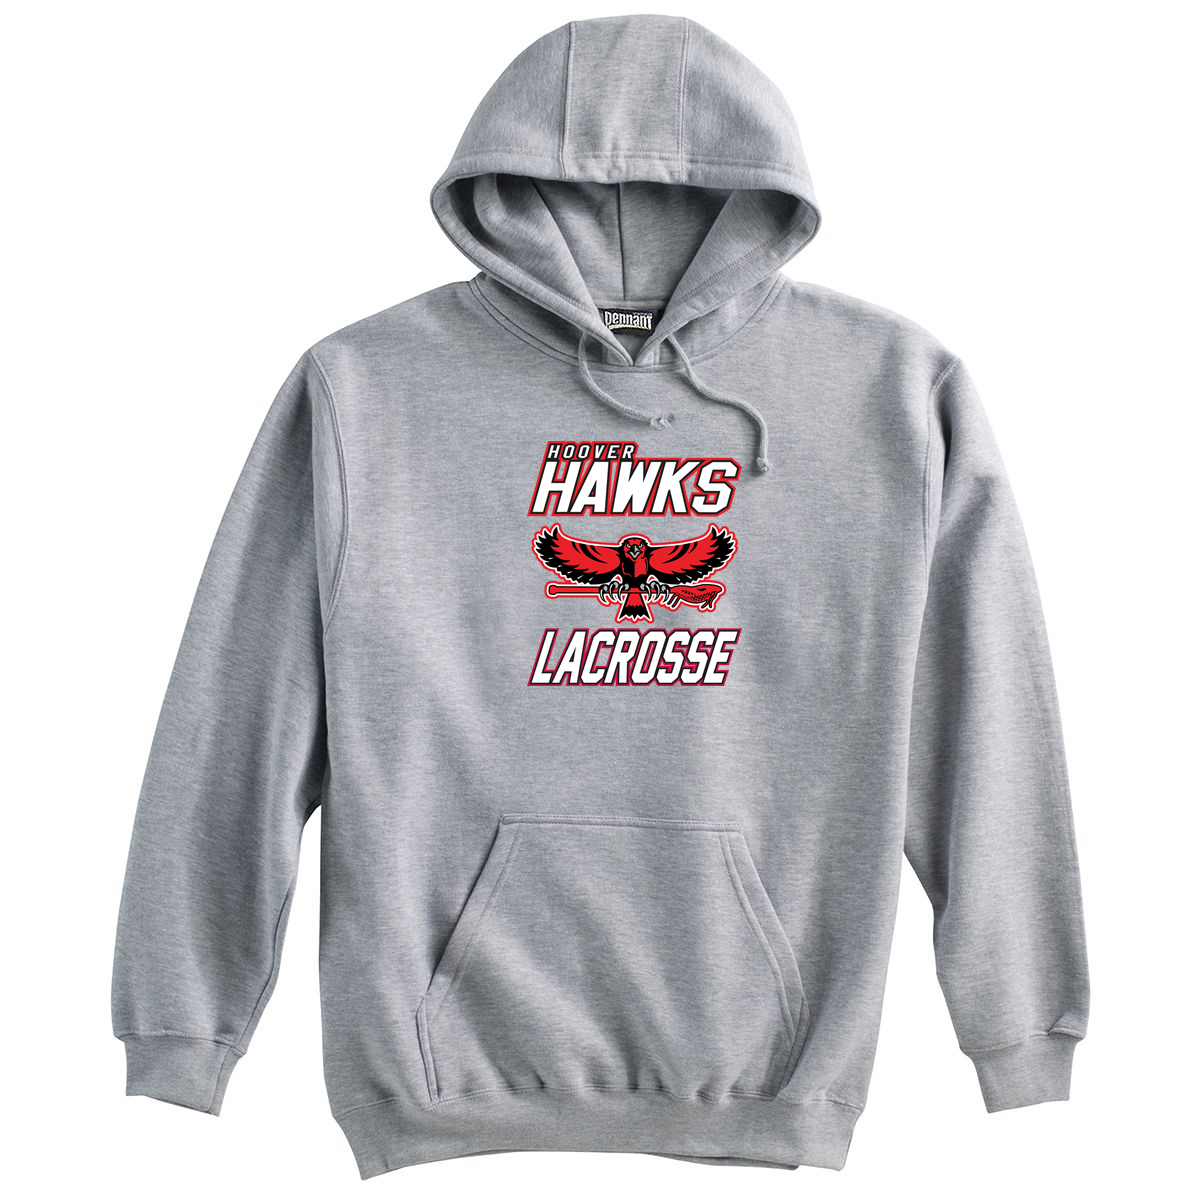 Hawks Lacrosse Sweatshirt